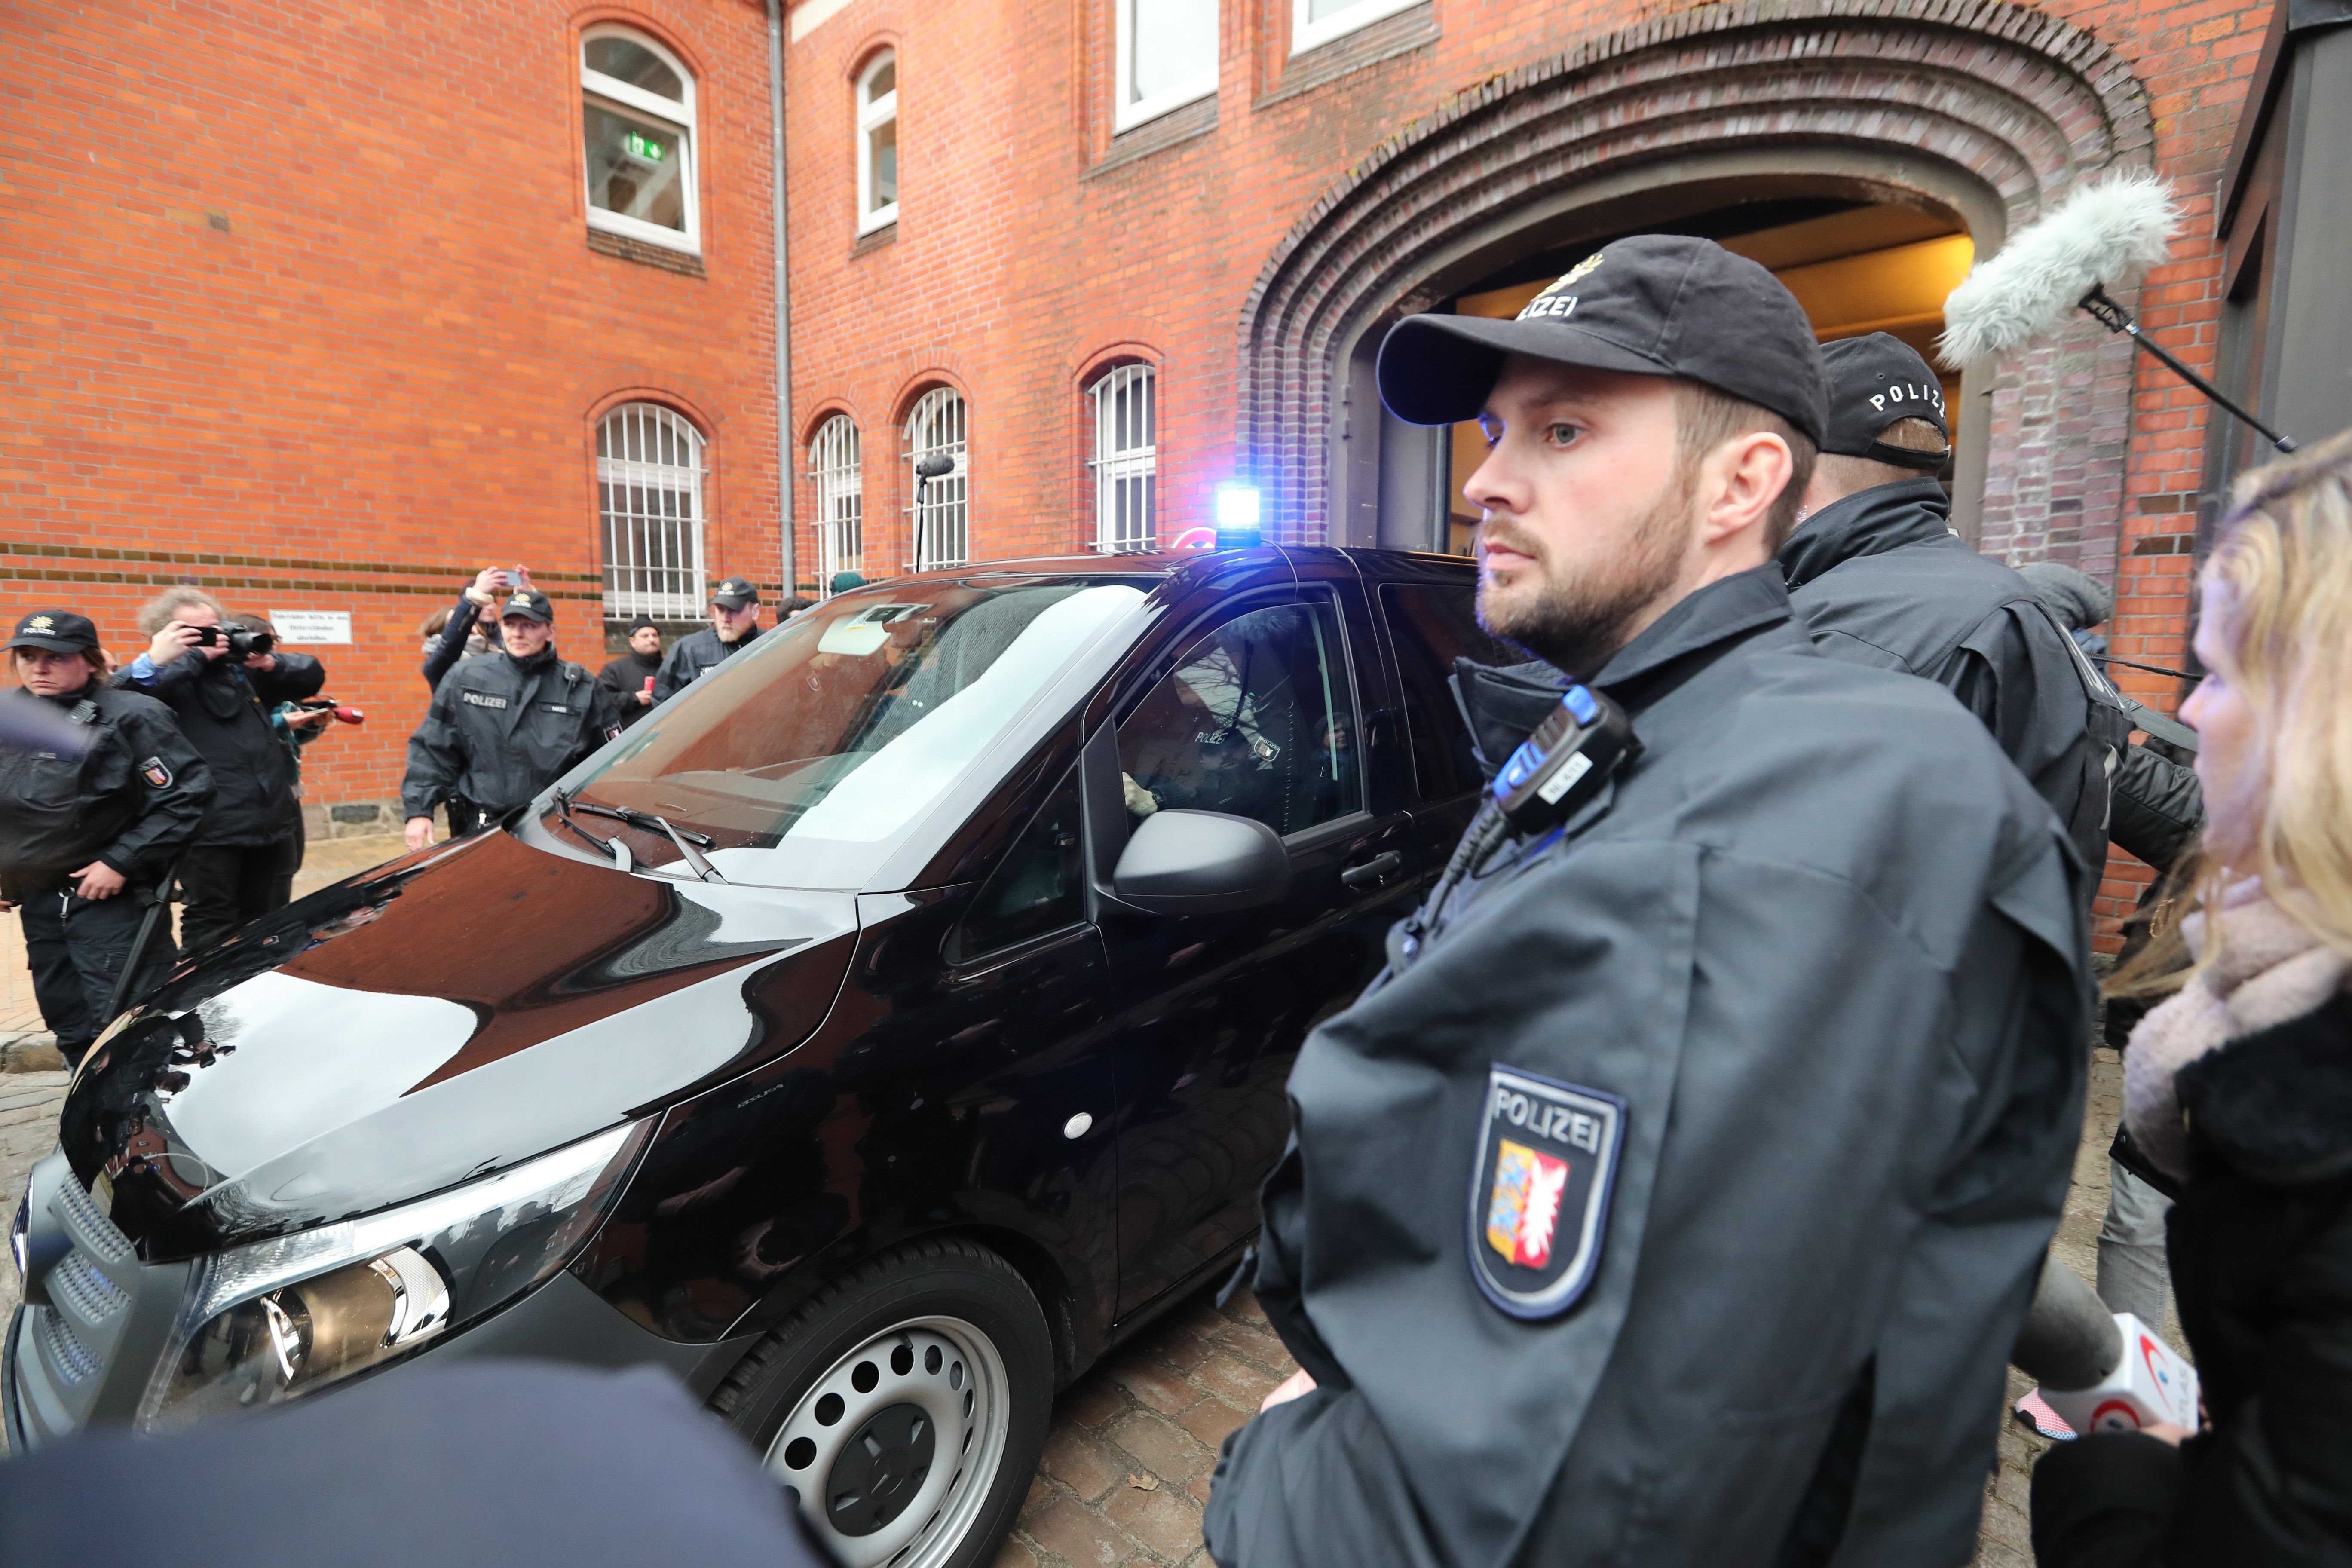 Presó provisional per Puigdemont mentre no es resolgui l'extradició